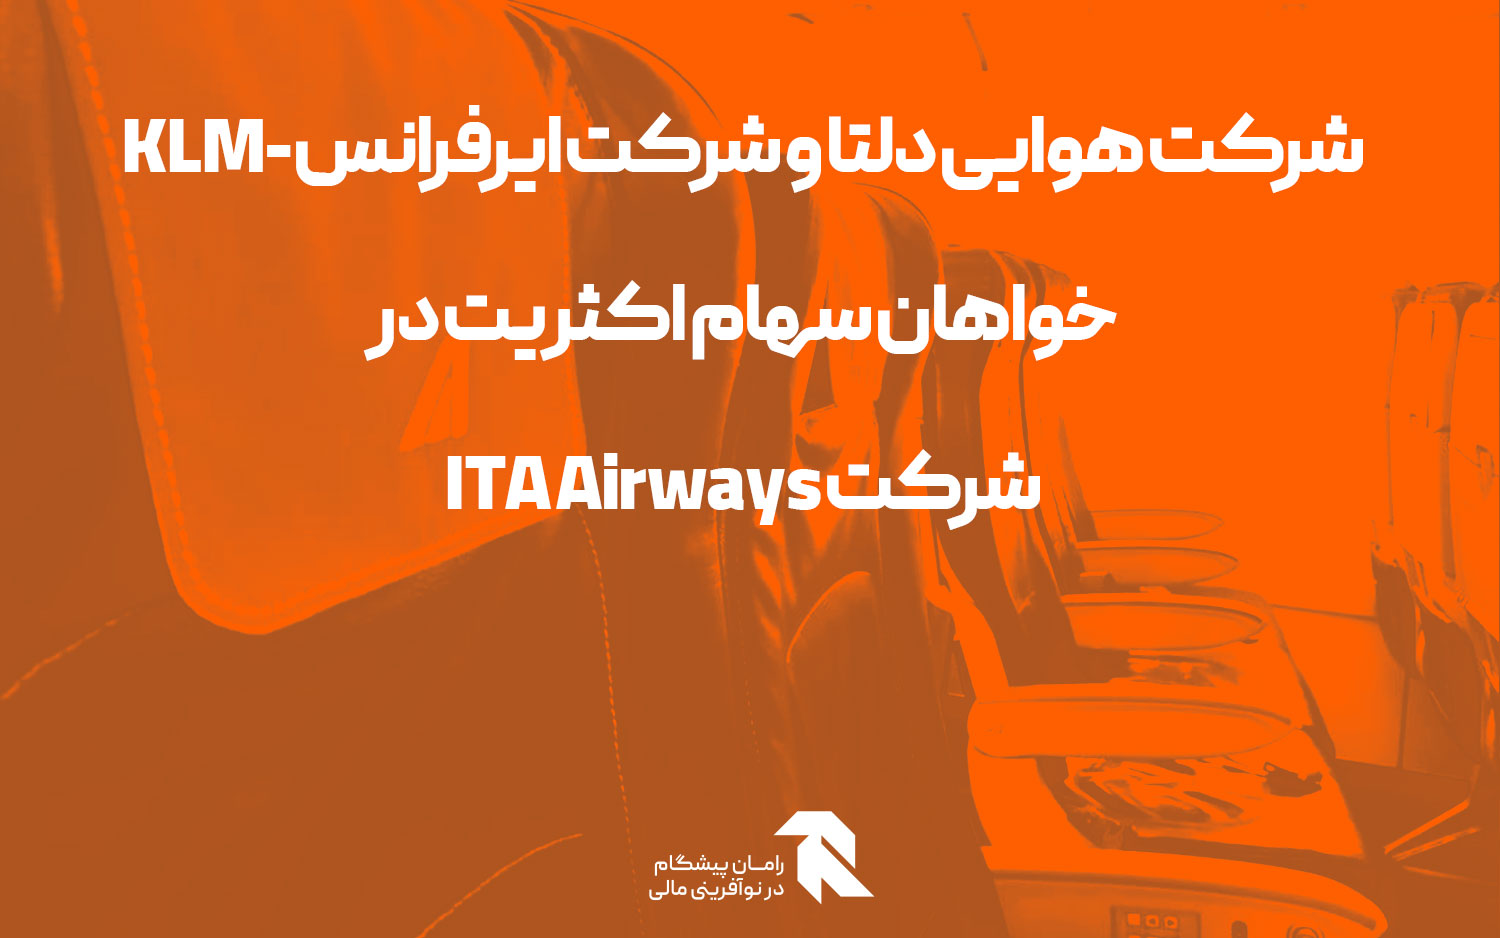 شرکت هوایی دلتا و شرکت ایرفرانس-KLM خواهان سهام اکثریت در شرکت ITA Airways